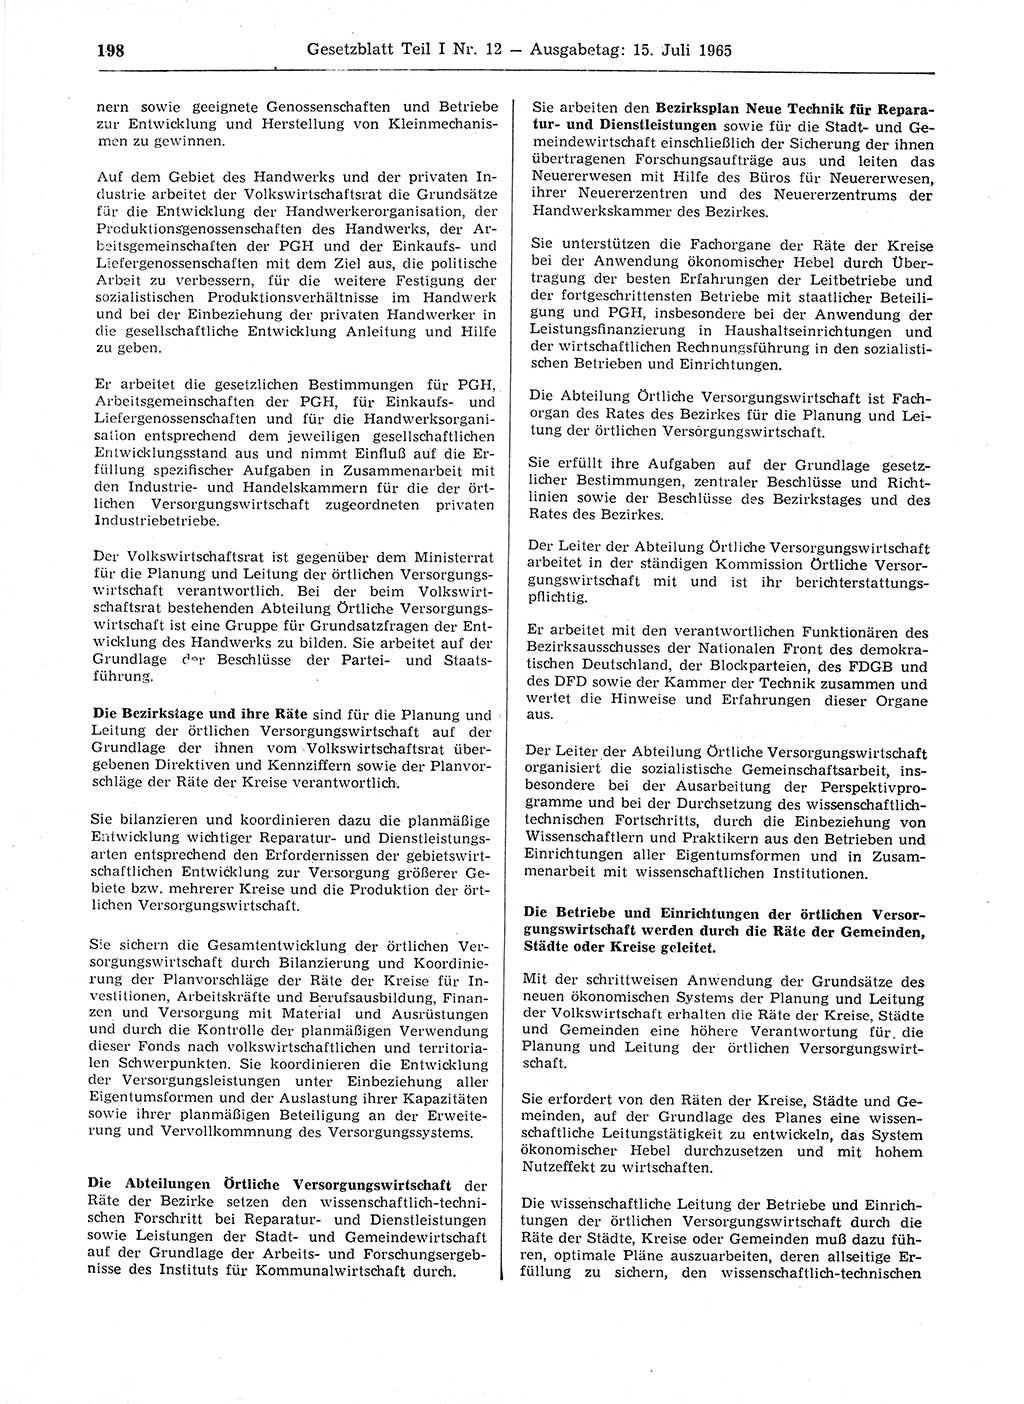 Gesetzblatt (GBl.) der Deutschen Demokratischen Republik (DDR) Teil Ⅰ 1965, Seite 198 (GBl. DDR Ⅰ 1965, S. 198)